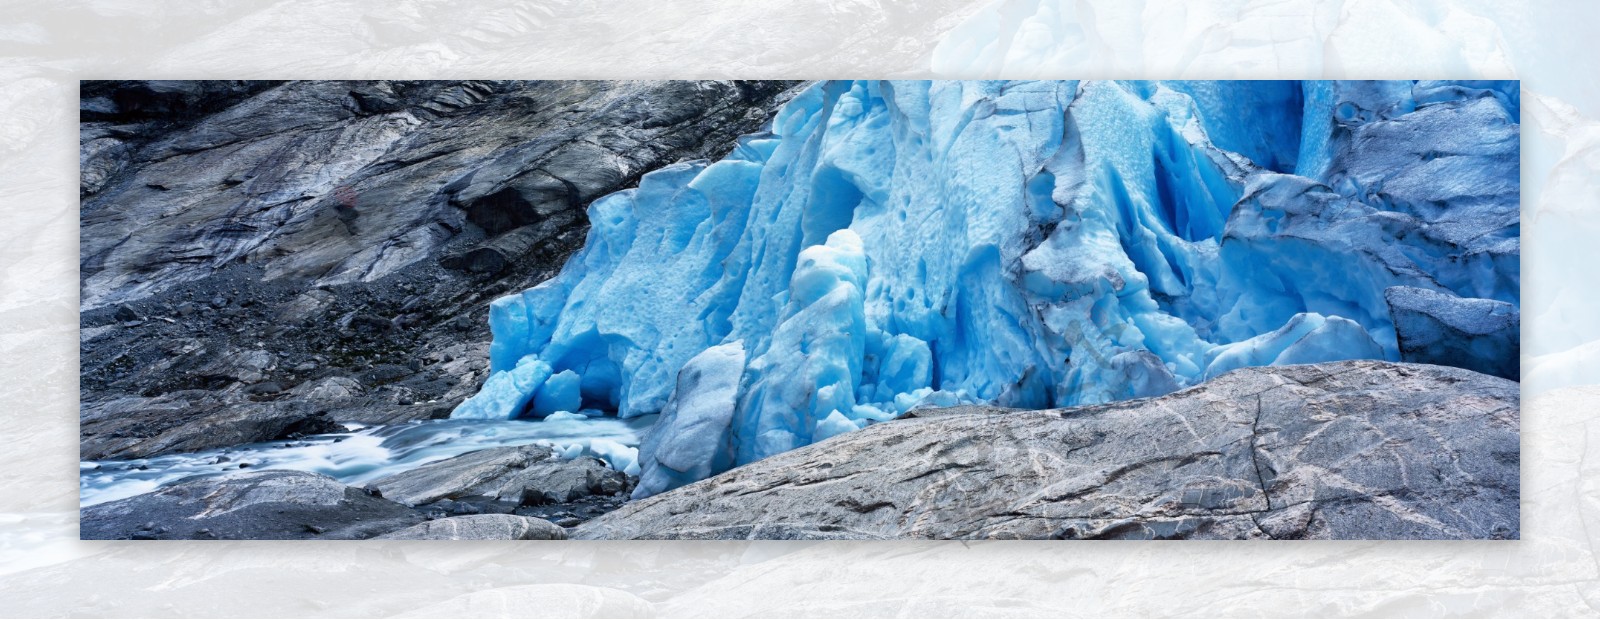 高原冰川美景图片